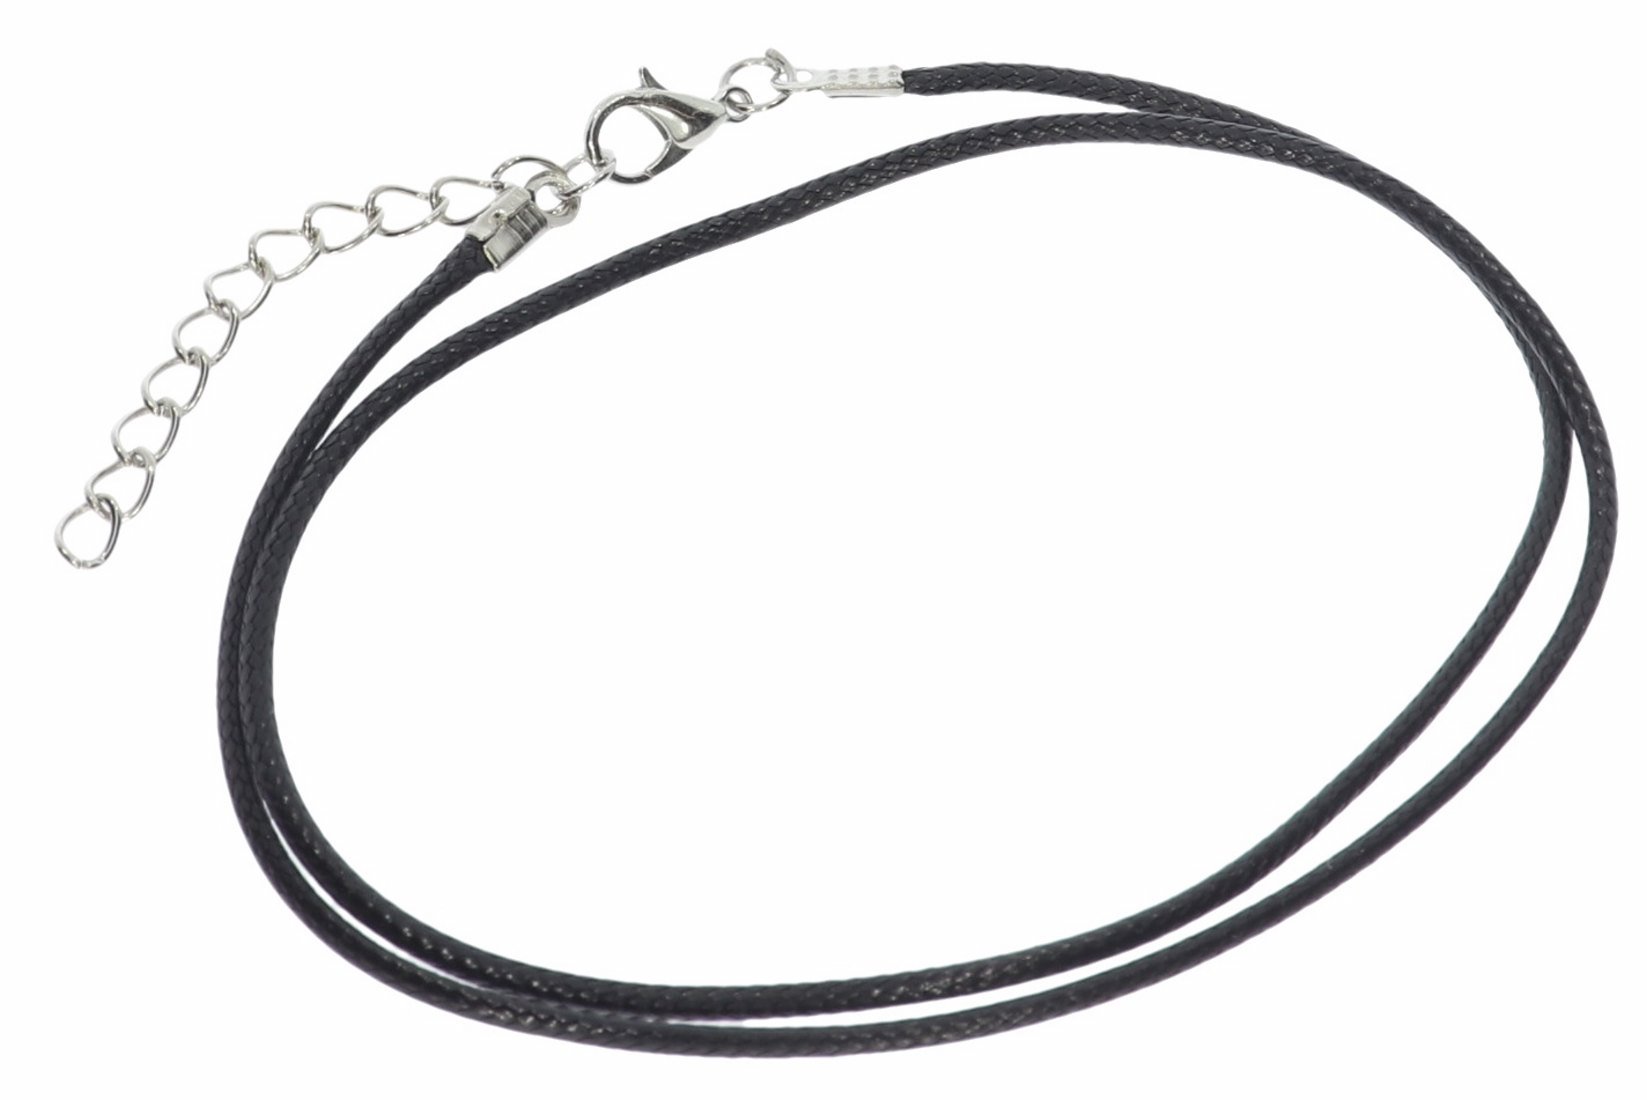 Schwarz - Baumwollband Halskette mit Edelstahl Karabiner 45-50cm - A241D